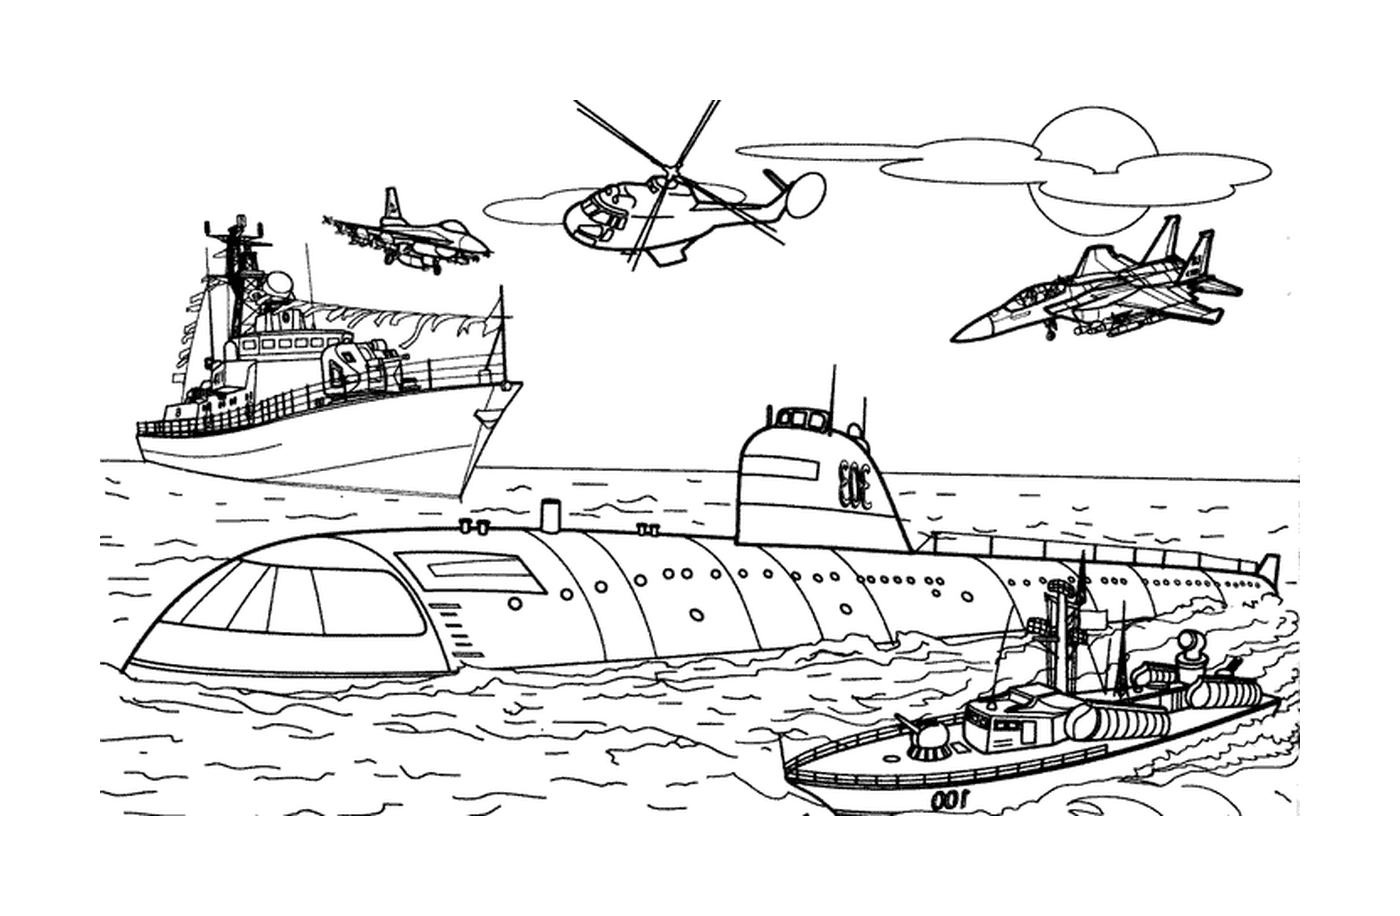  Trasporto militare: barca ed elicottero 